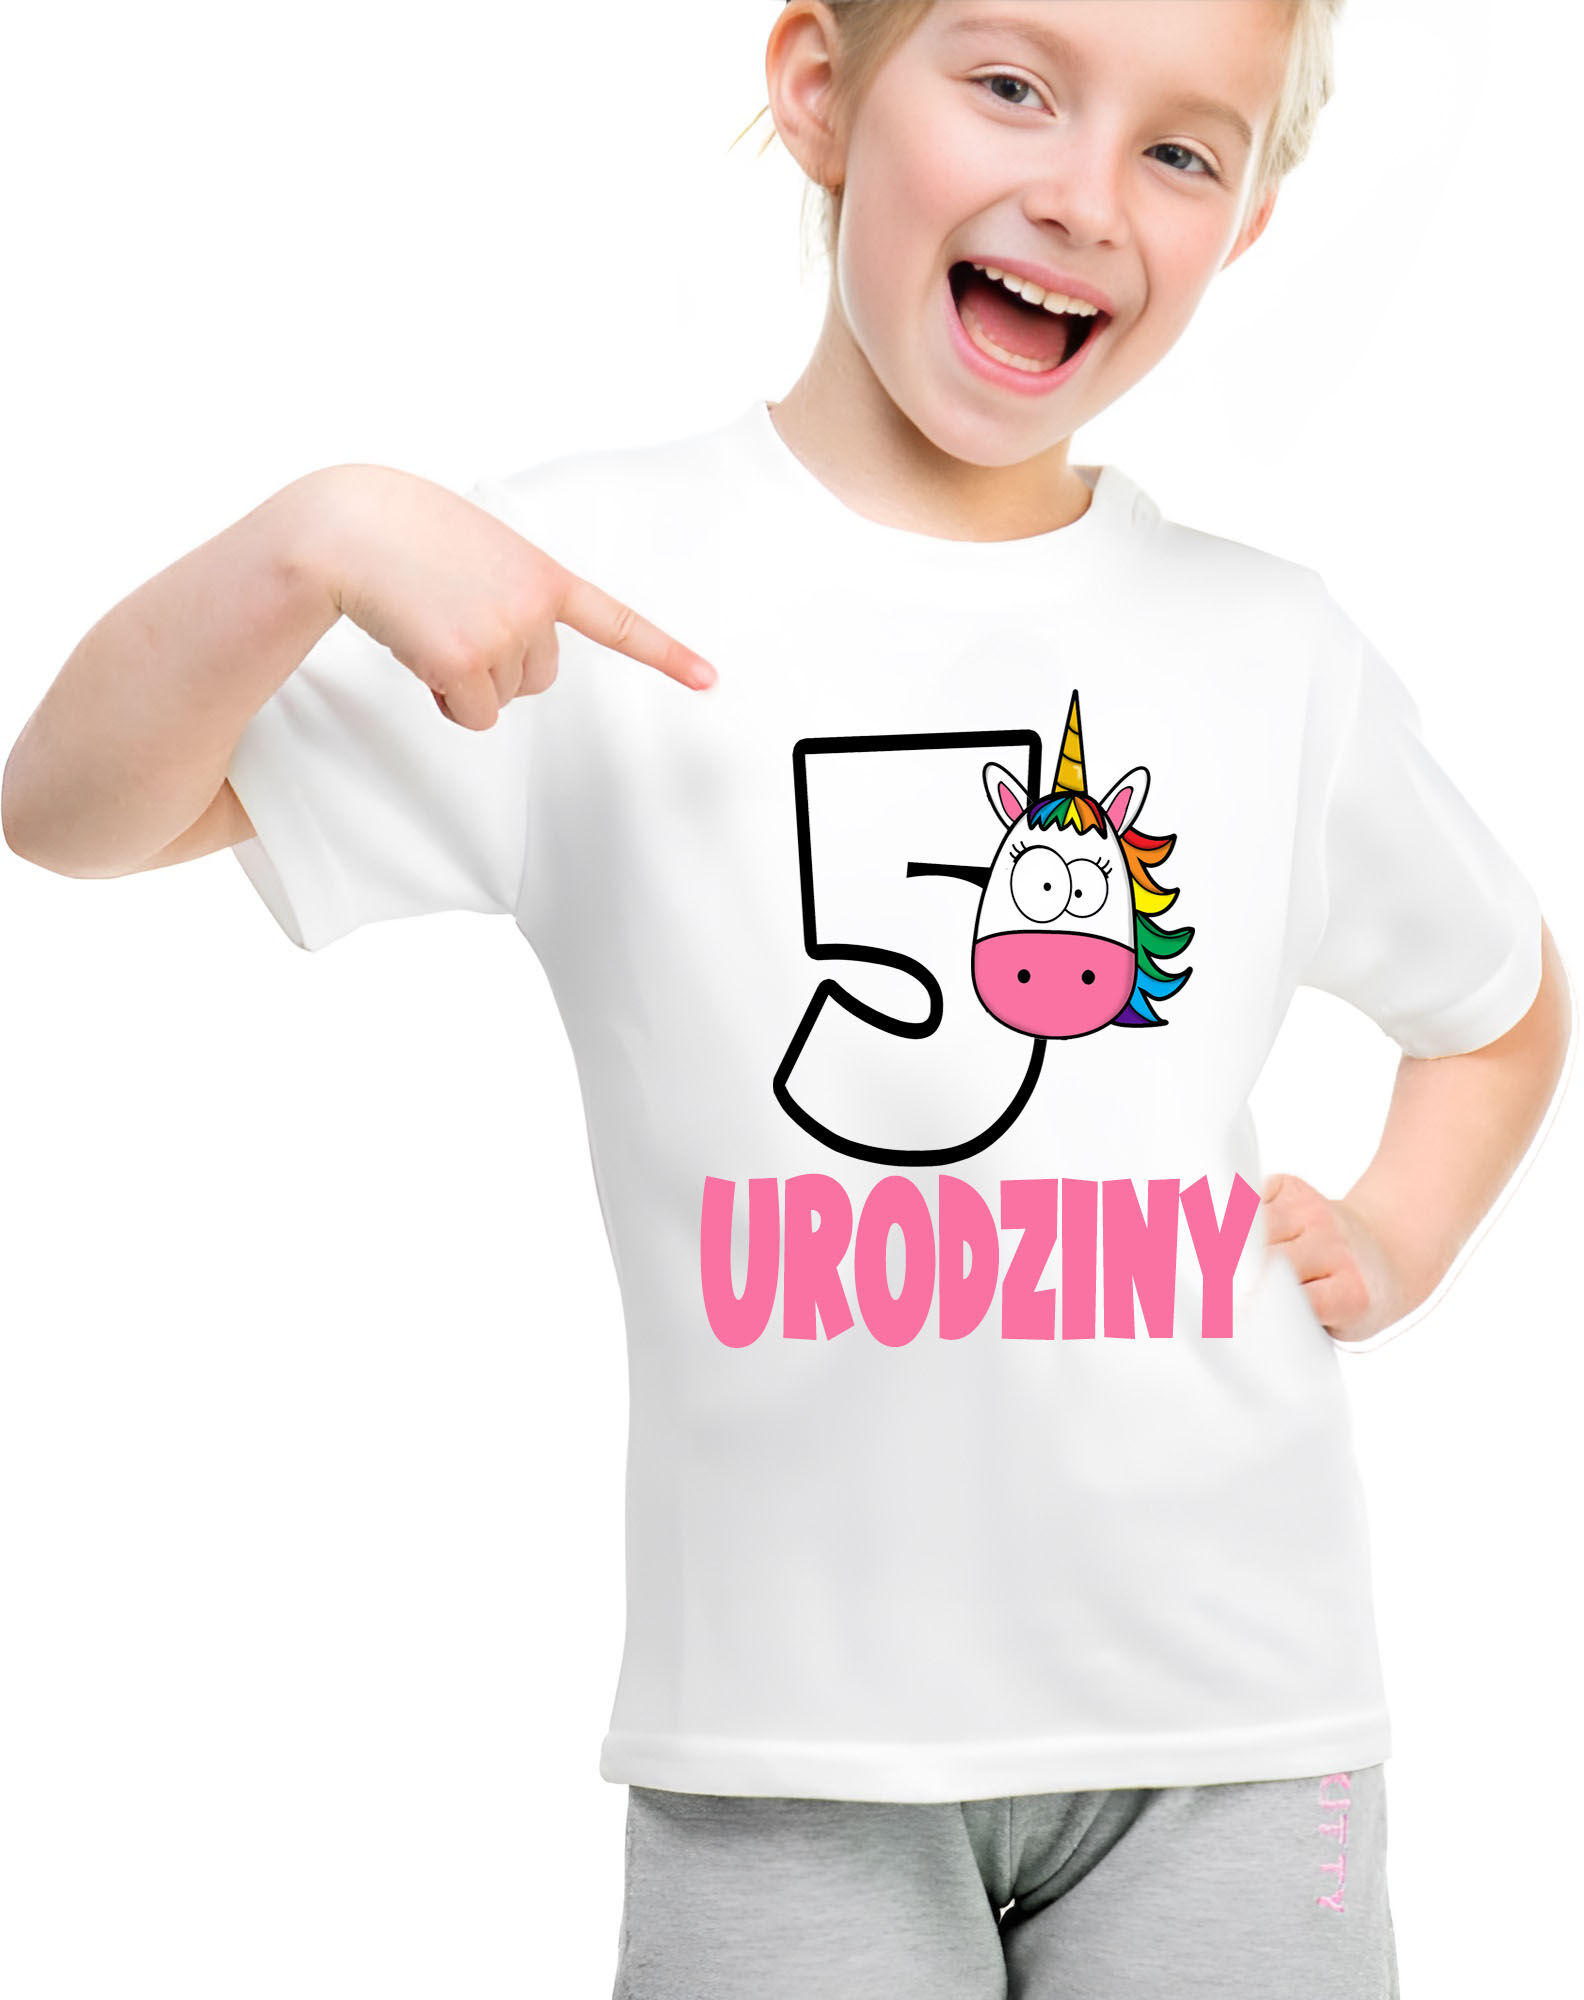 T-shirt Koszulka urodzinowa 5 Urodziny Jednorożec